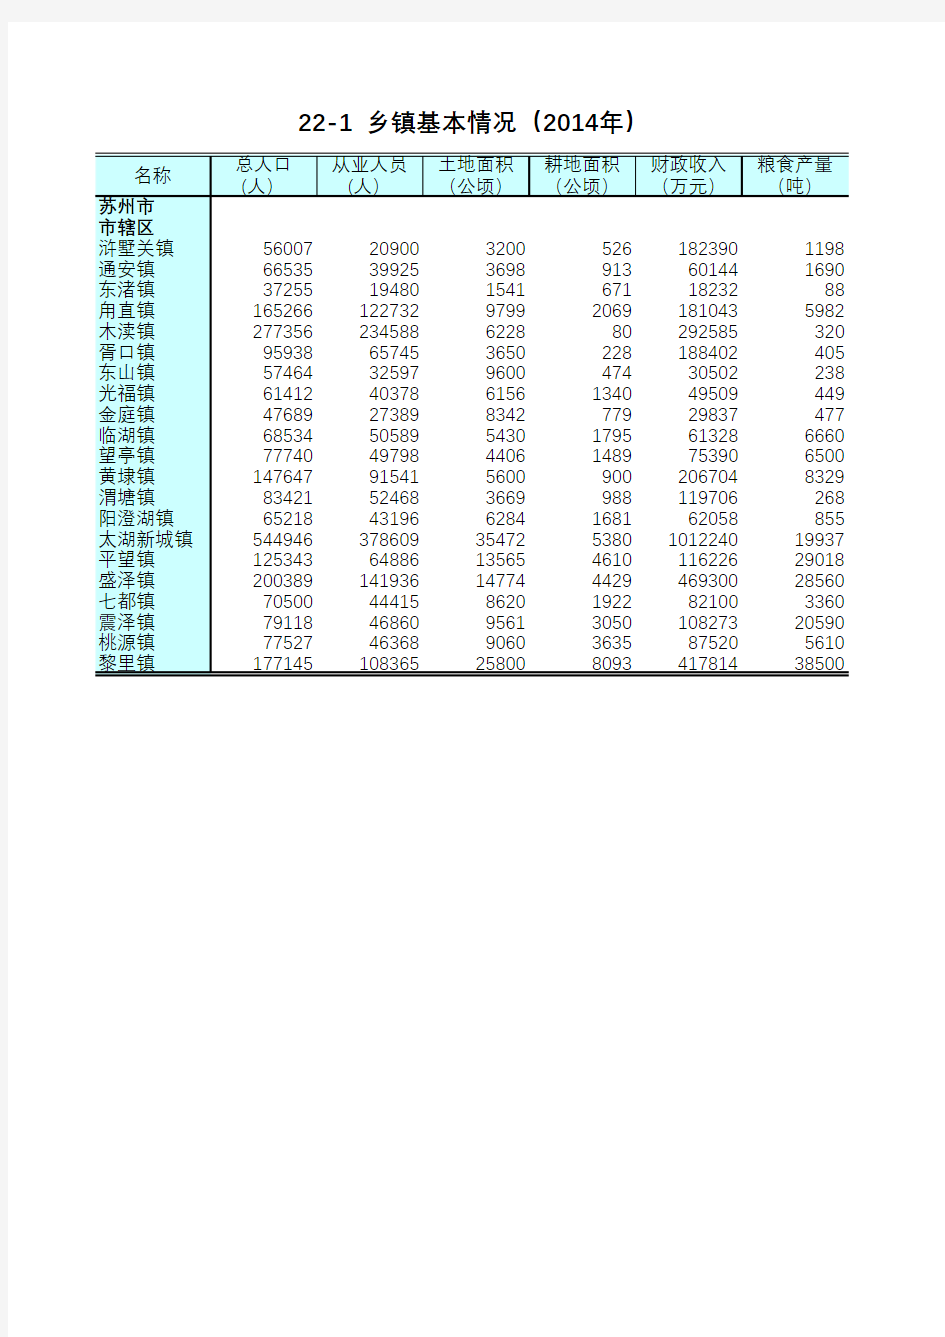 江苏统计年鉴2015社会经济发展指标：乡镇基本情况(2014年)苏州市市辖区